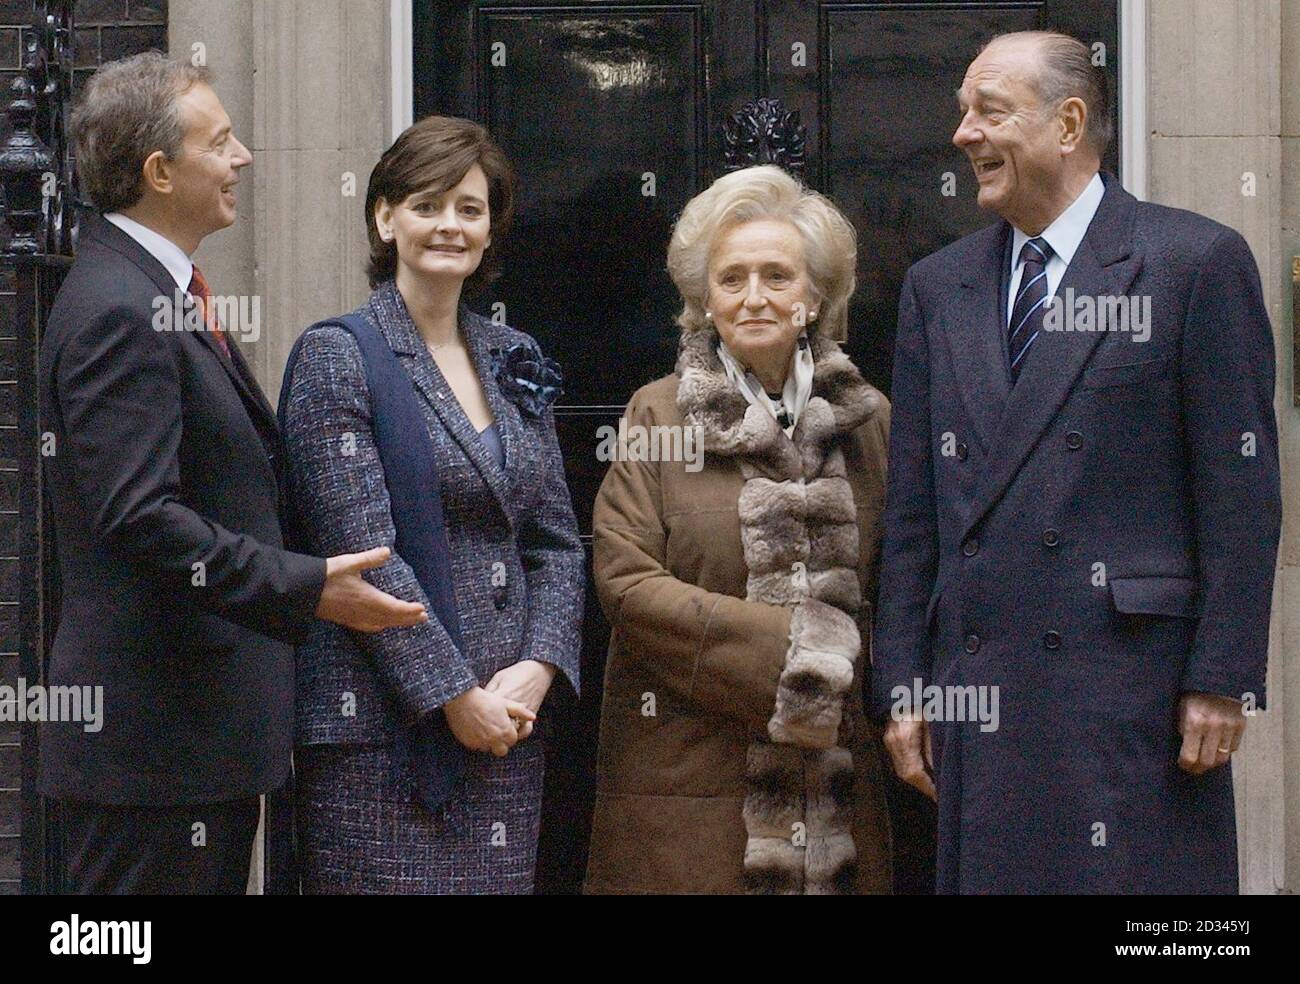 Il primo ministro Tony Blair e sua moglie Cherie salutano il presidente francese Chirac e sua moglie Bernadette a Downing St, in occasione di una visita di Stato francese in occasione del centenario dell'Entente Cordialle tra Gran Bretagna e Francia. Foto Stock